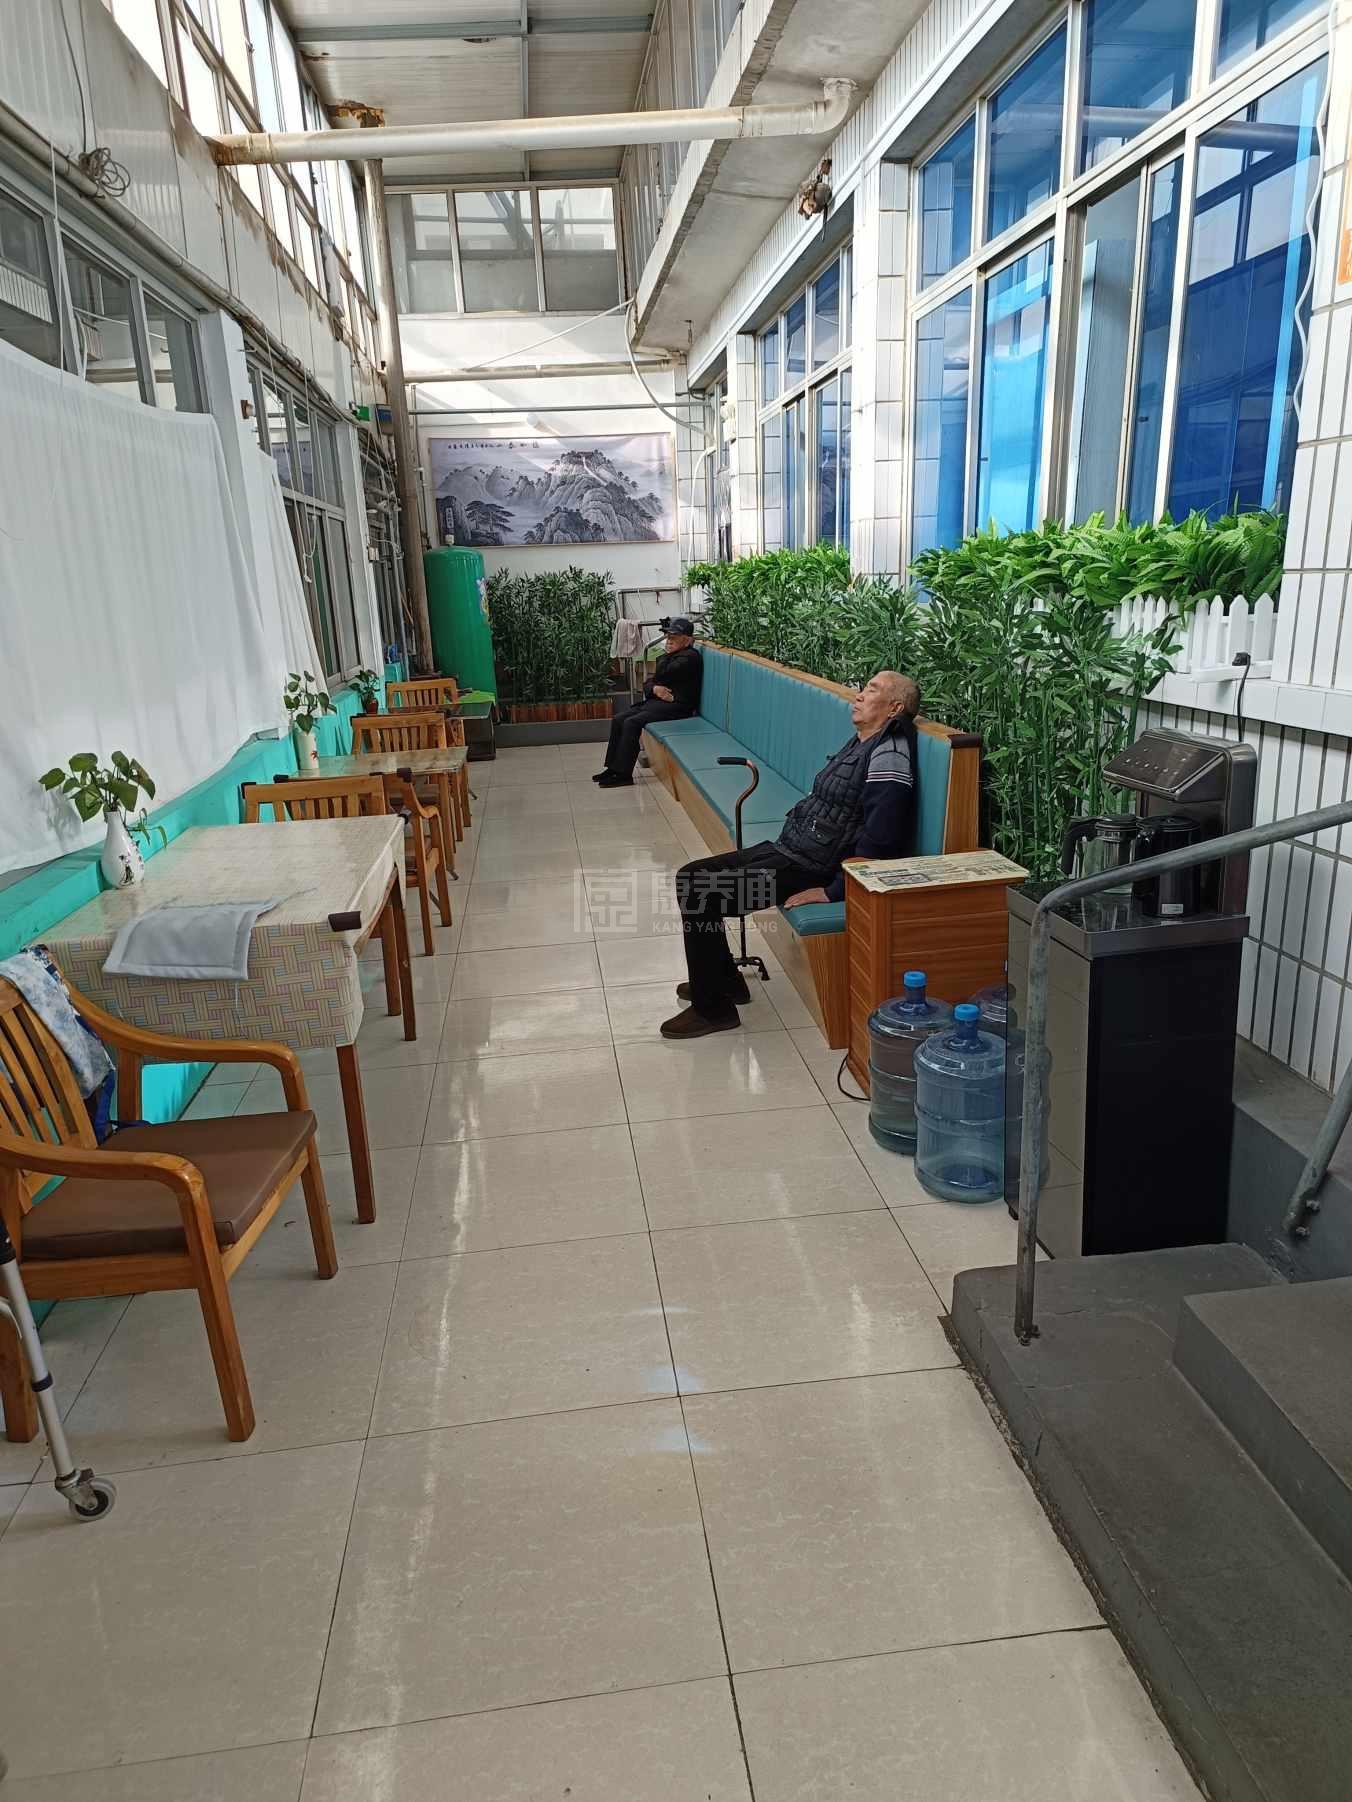 天津市蓟州区耐心养老服务中心服务项目图4让长者主动而自立地生活